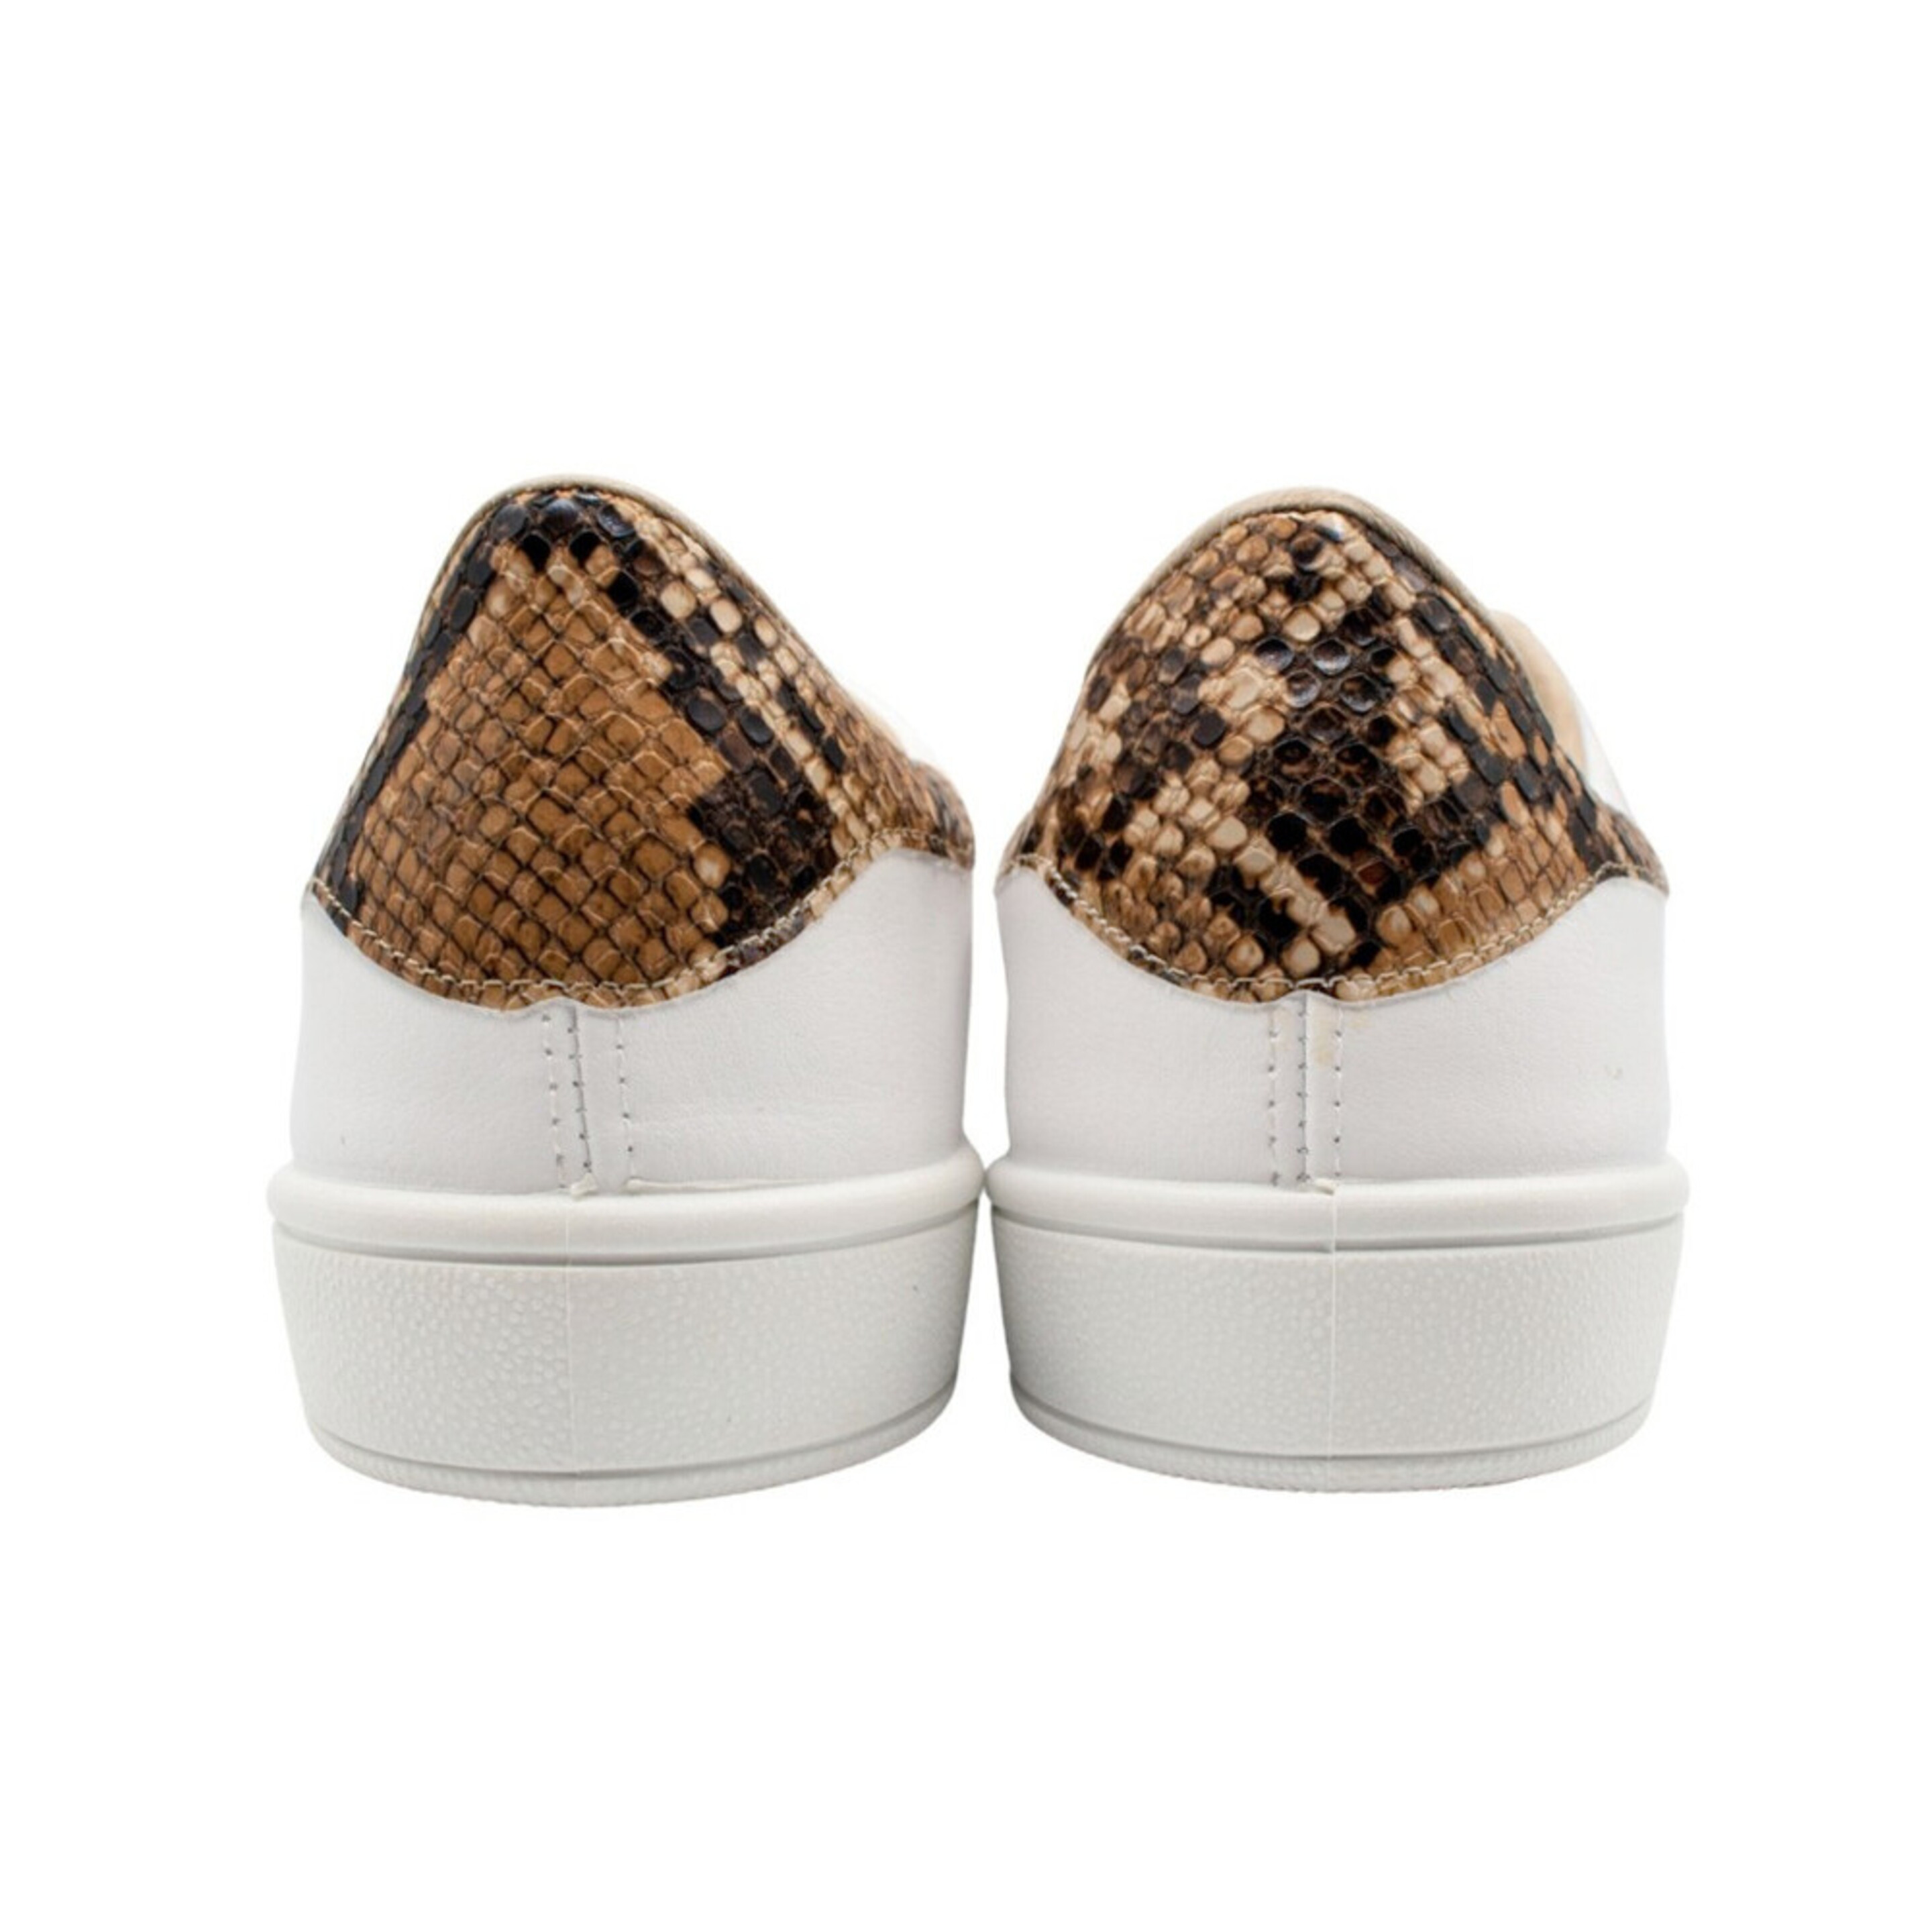 Sneaker Owlet Shoes Python - Blanco/Amarillo - Tu Zona Owlet  MKP